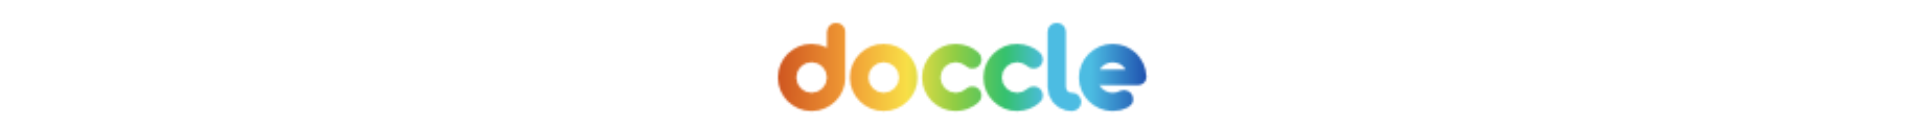 Doccle logo 2